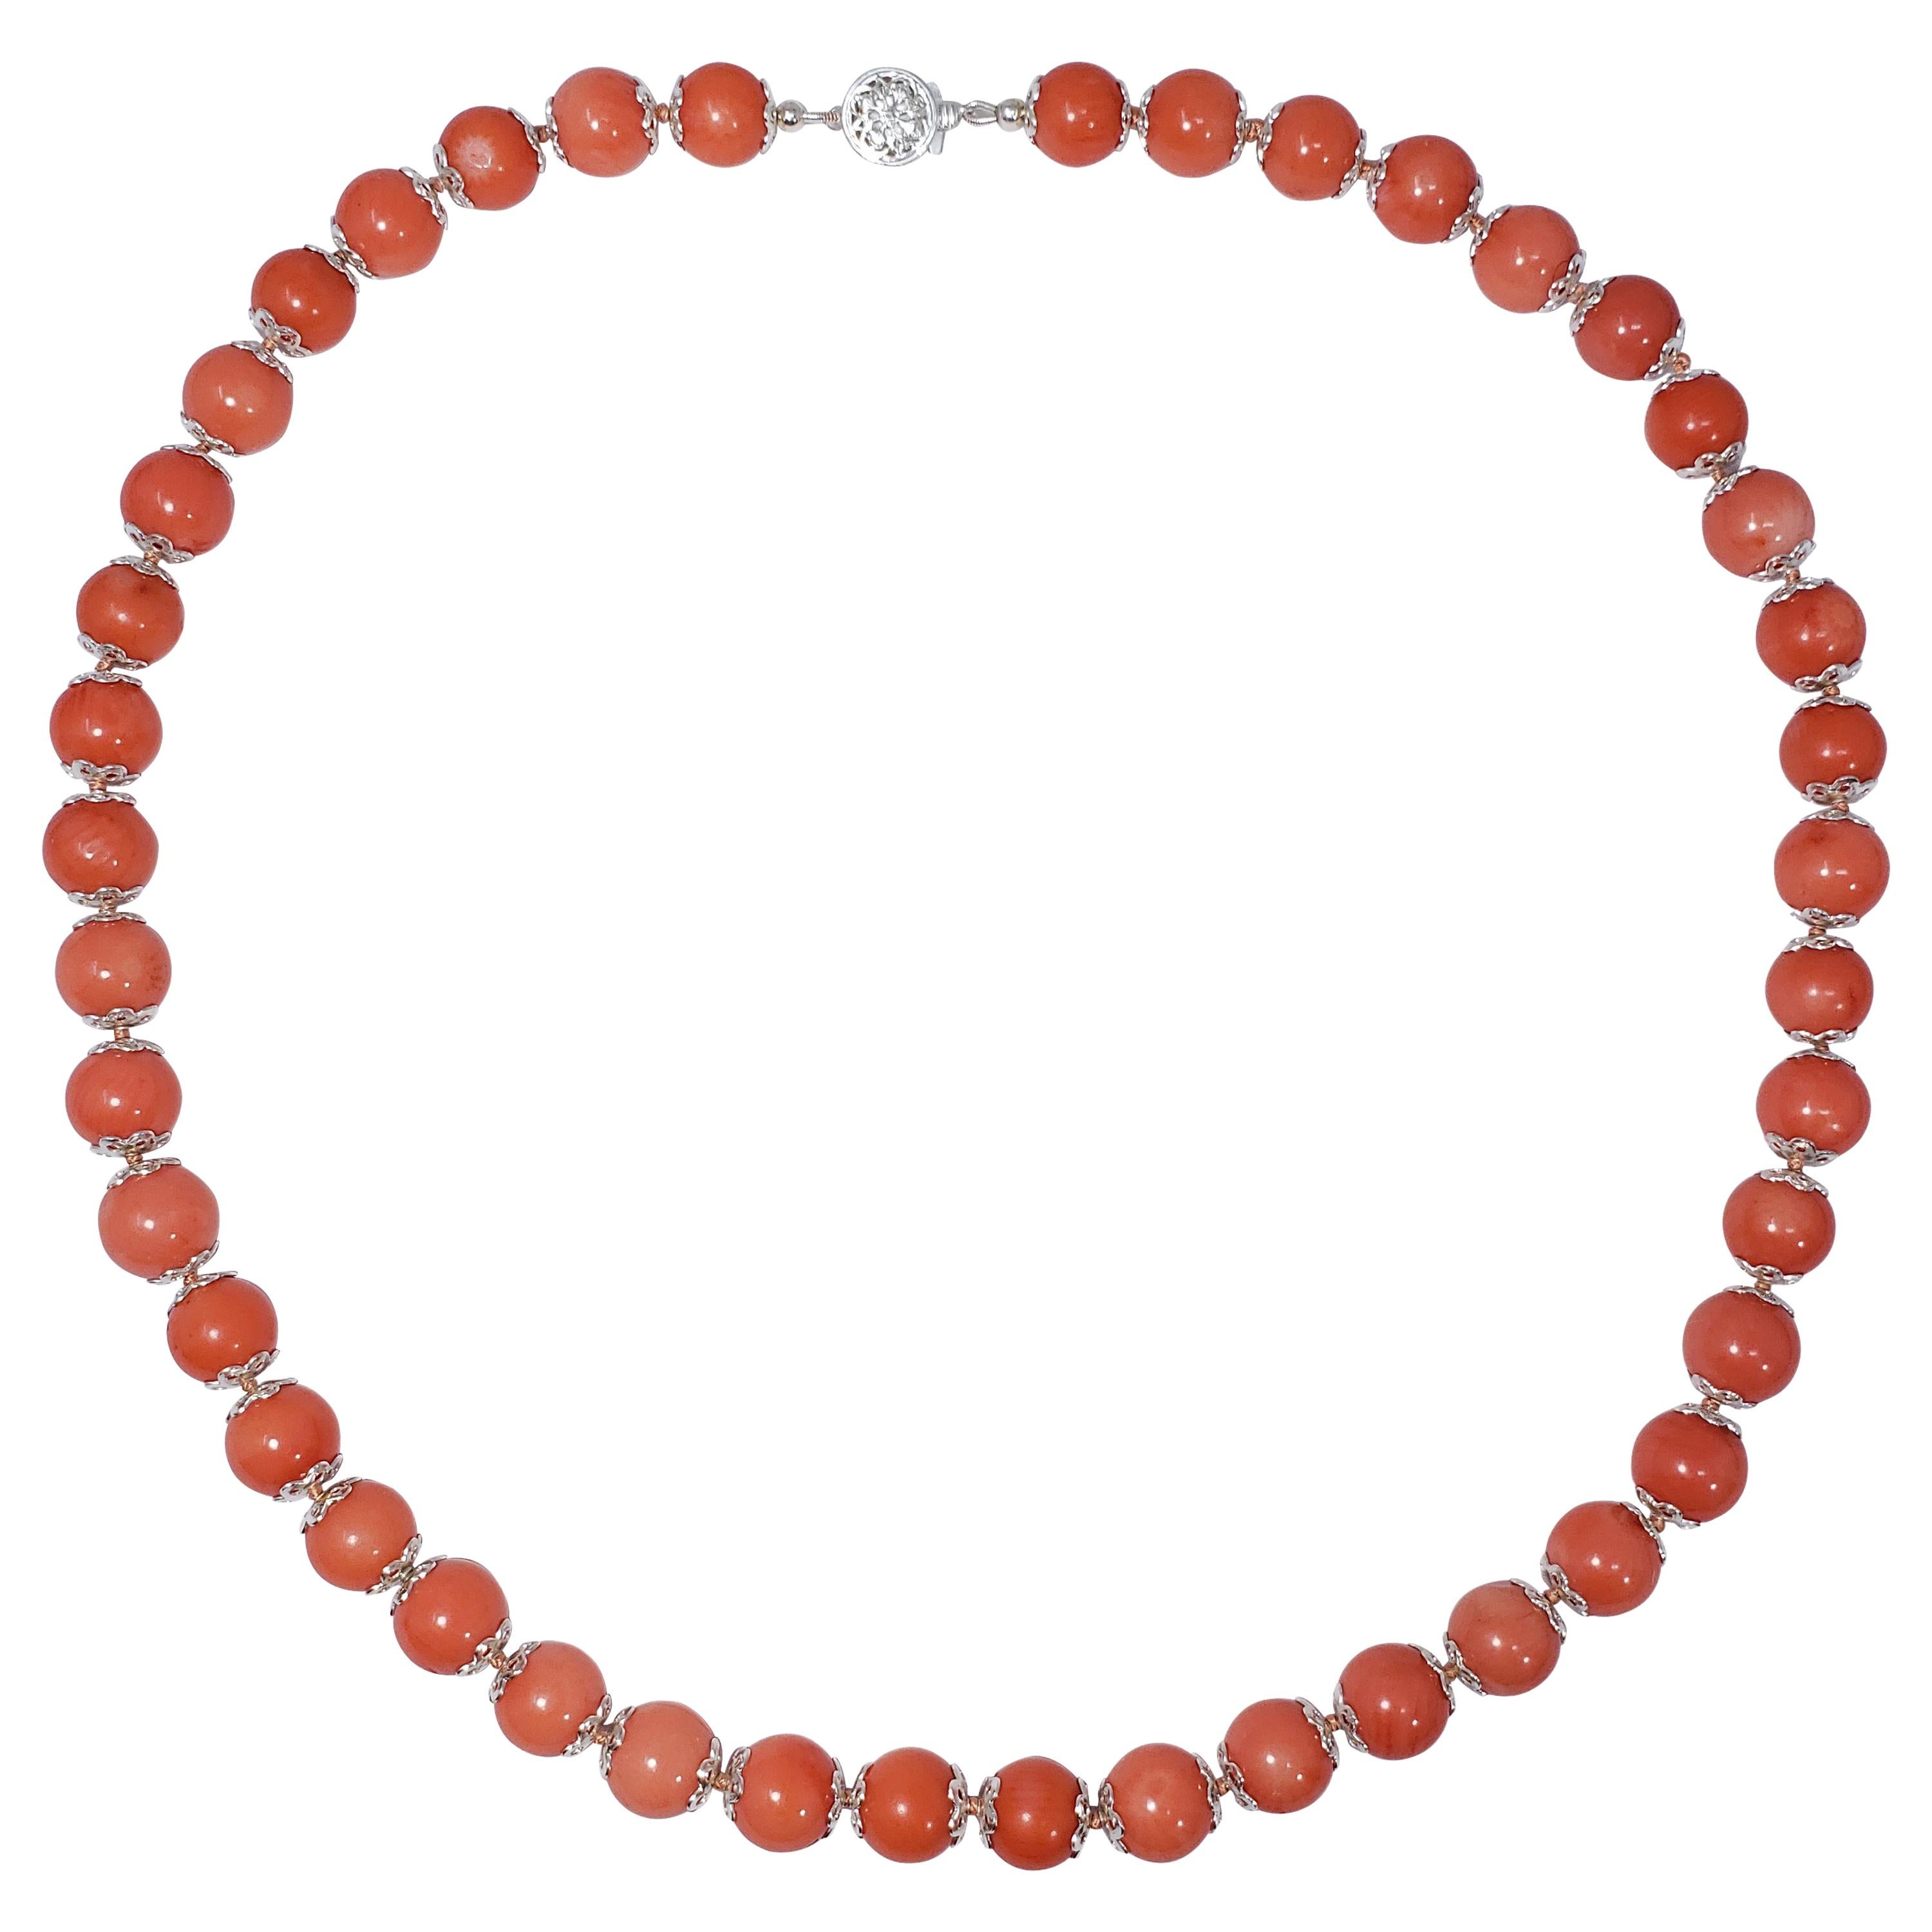 Halskette mit lachsfarbener Koralle und perlenbesetztem Silber-Akzent, 50 cm, Sterlingsilber